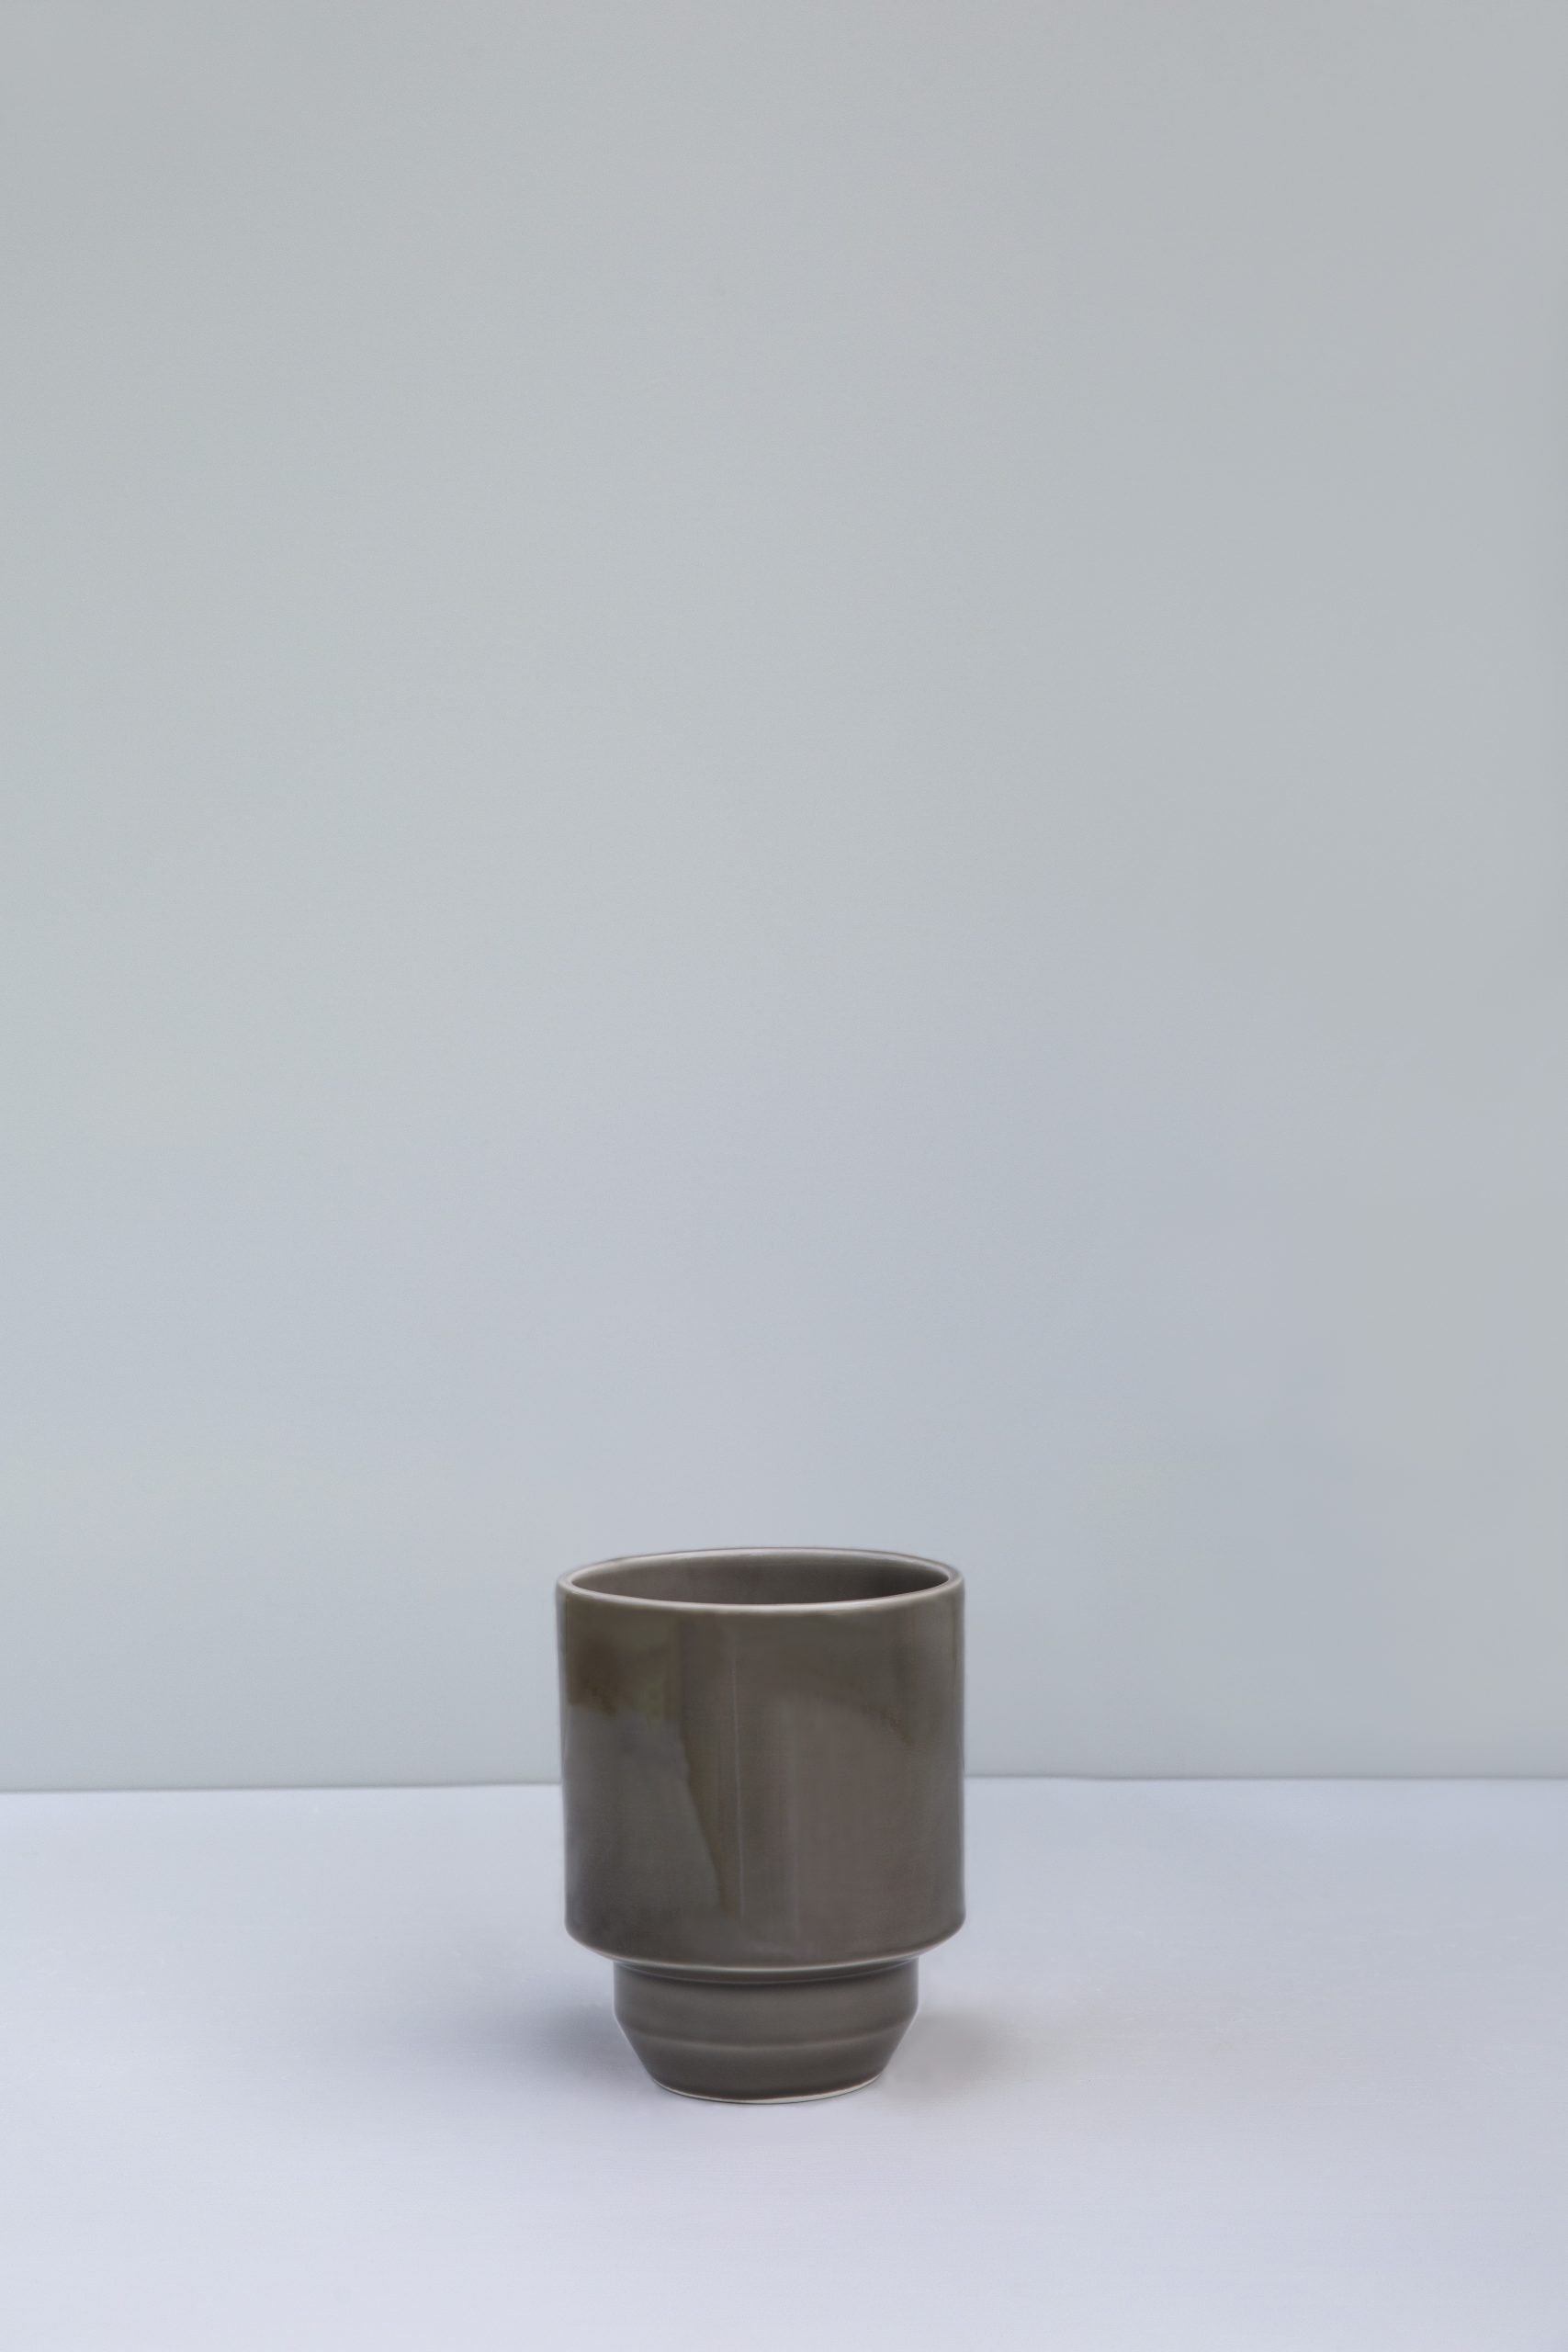 Empty glazed pearl grey pot.